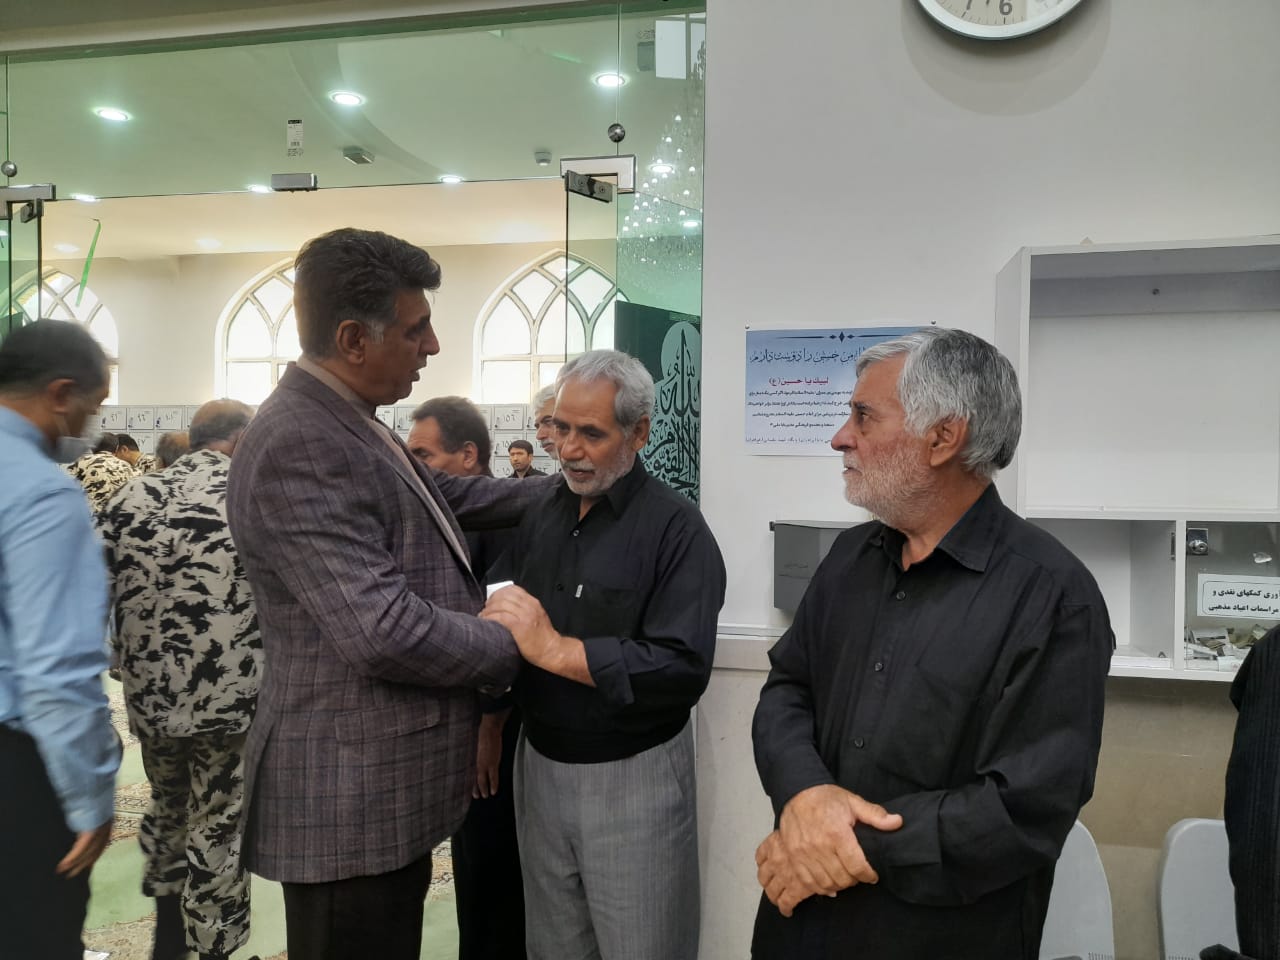 مراسم گرامیداشت شهید مدافع طبیعت جواد غلامی طبسی در مشهد برگزار شد